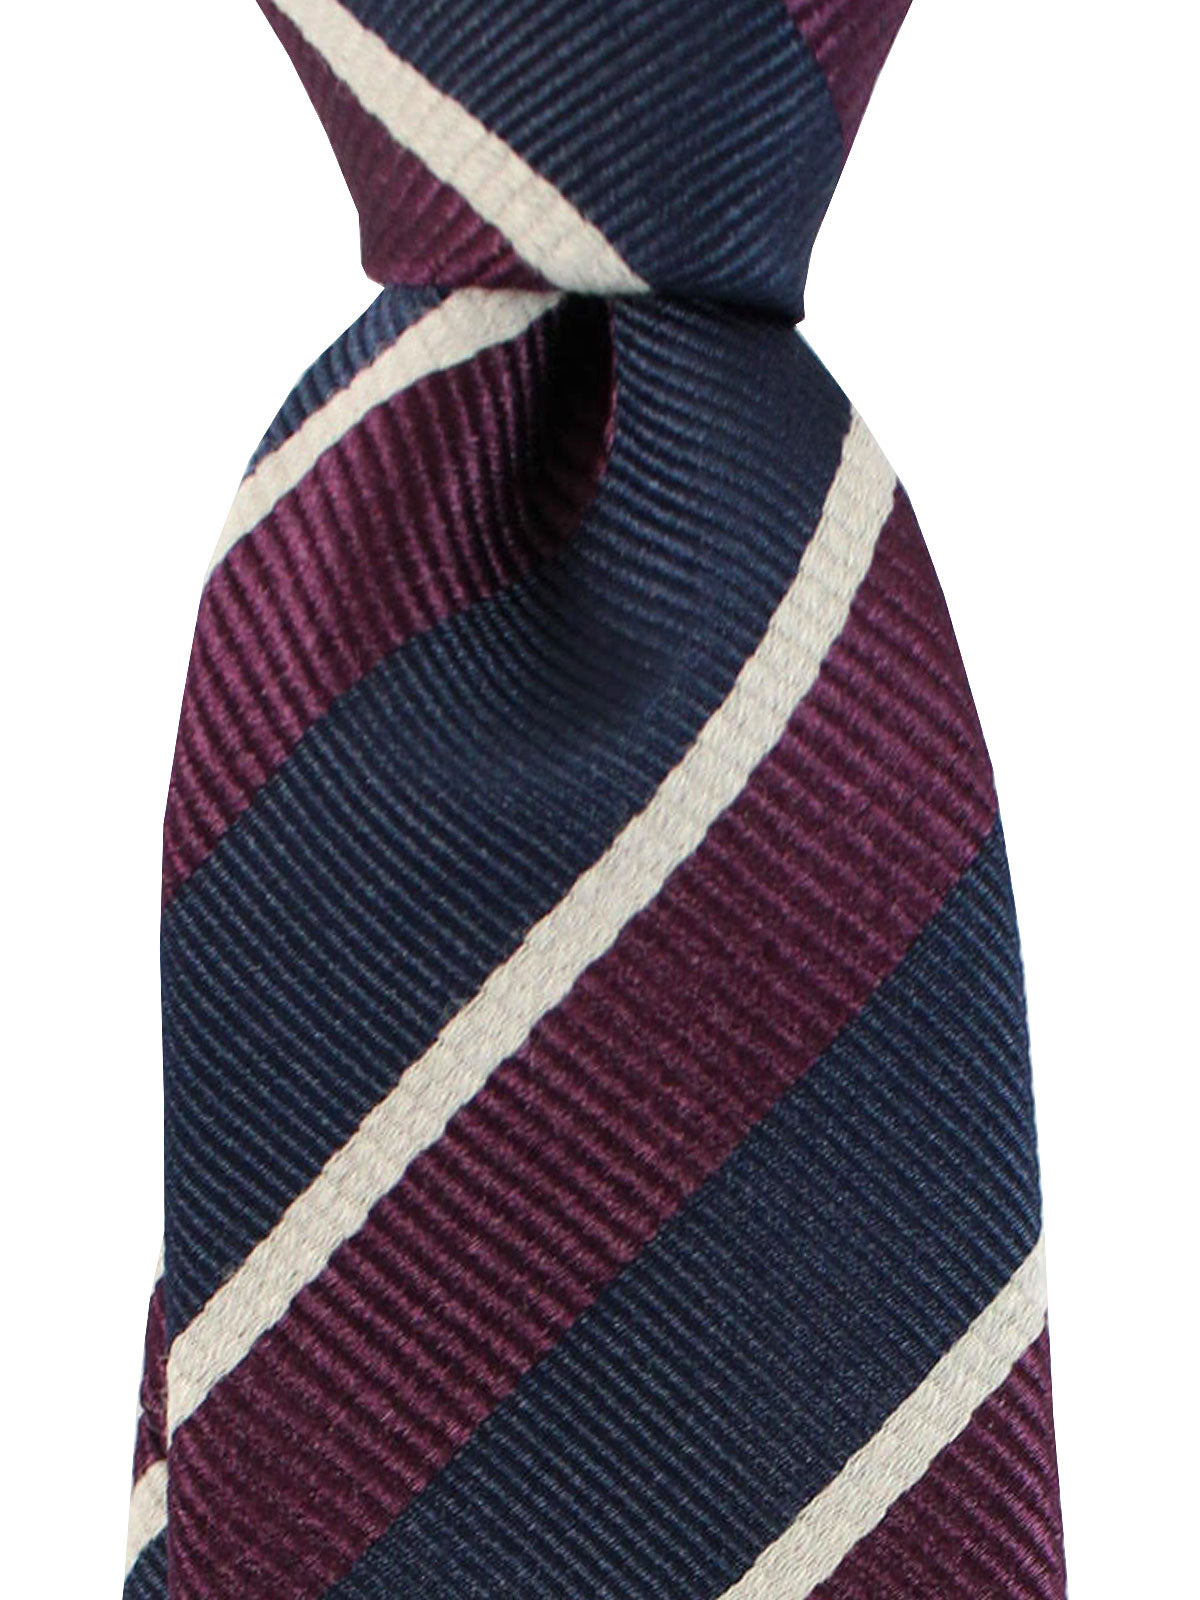 Gucci Silk Tie Dark Blue Maroon Stripes Design - Narrow Necktie